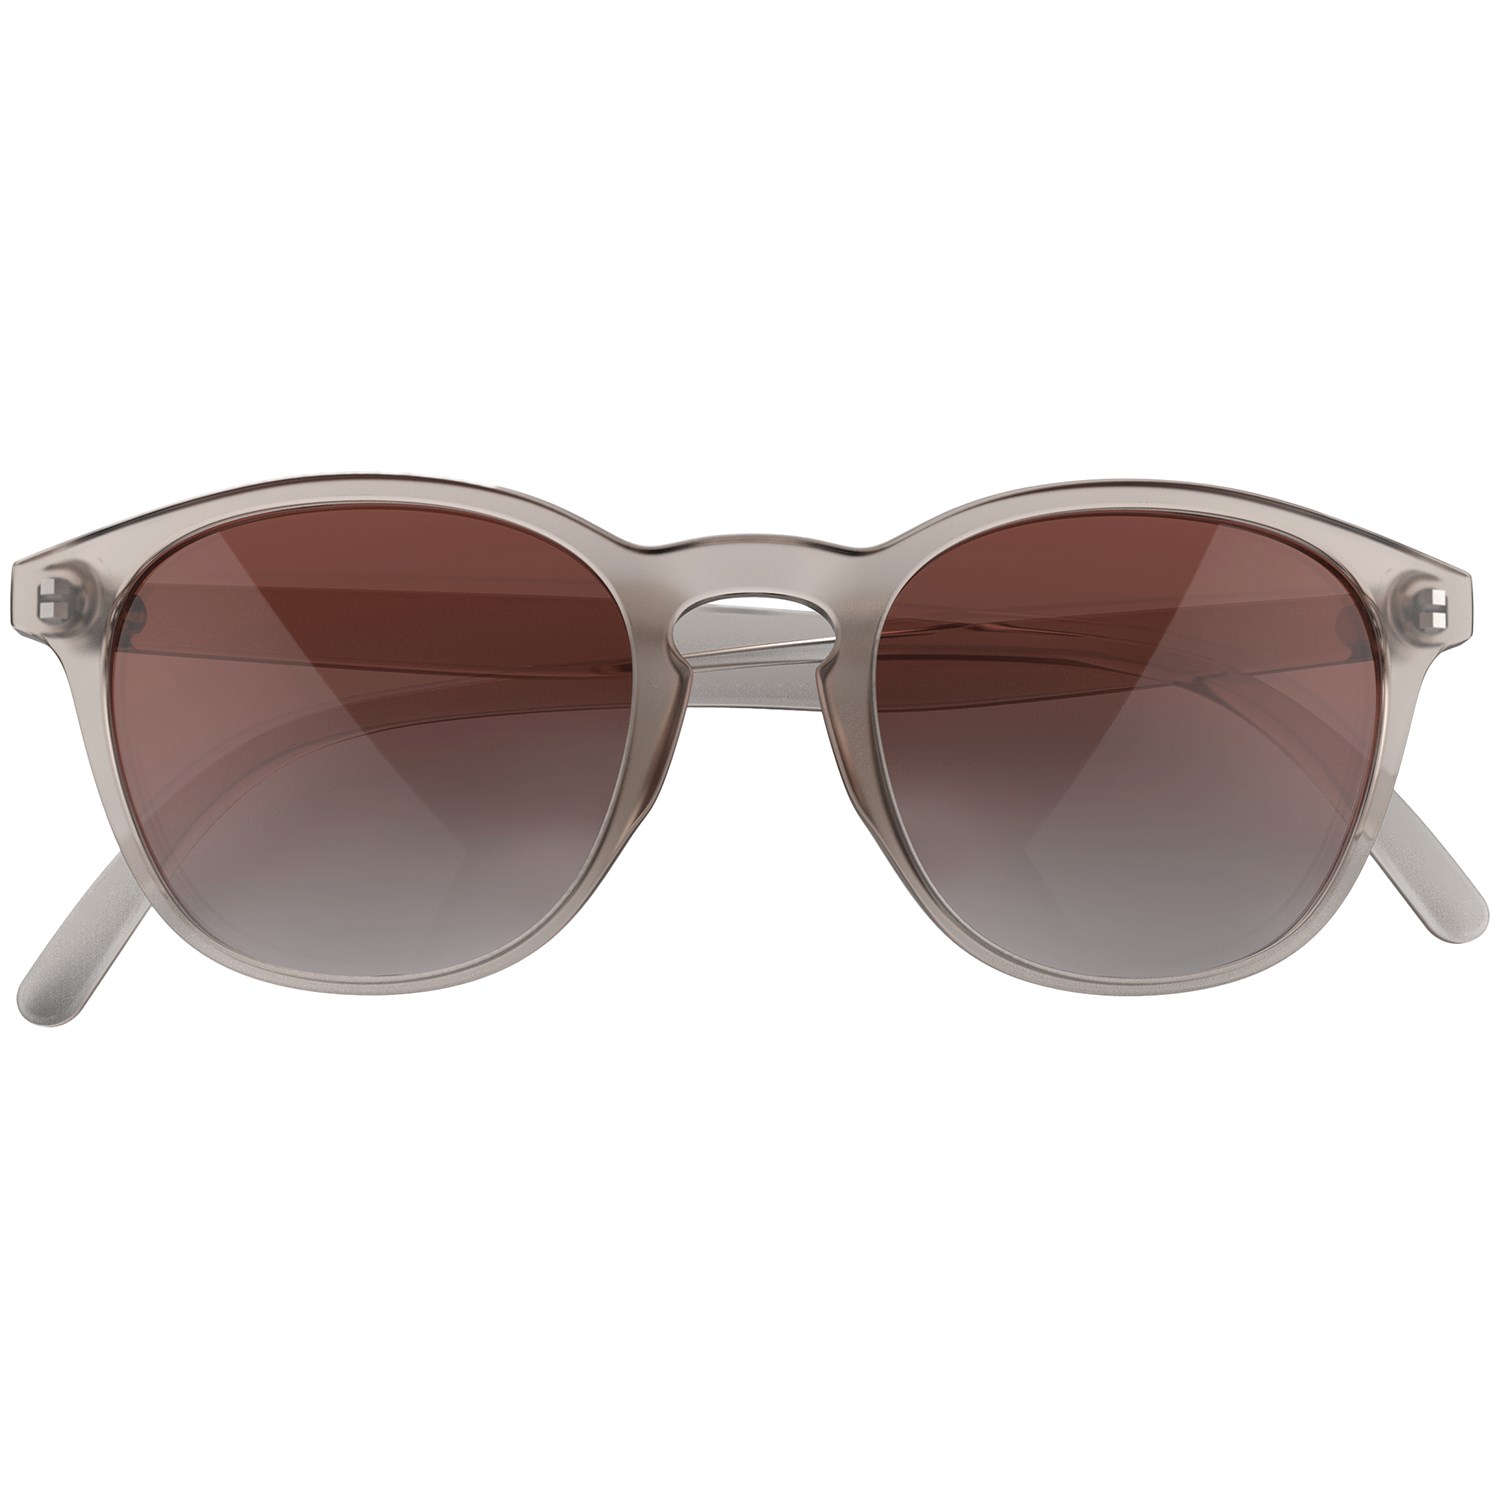 Солнцезащитные очки Sunski Yuba, серый/коричневый поляризационная оптика